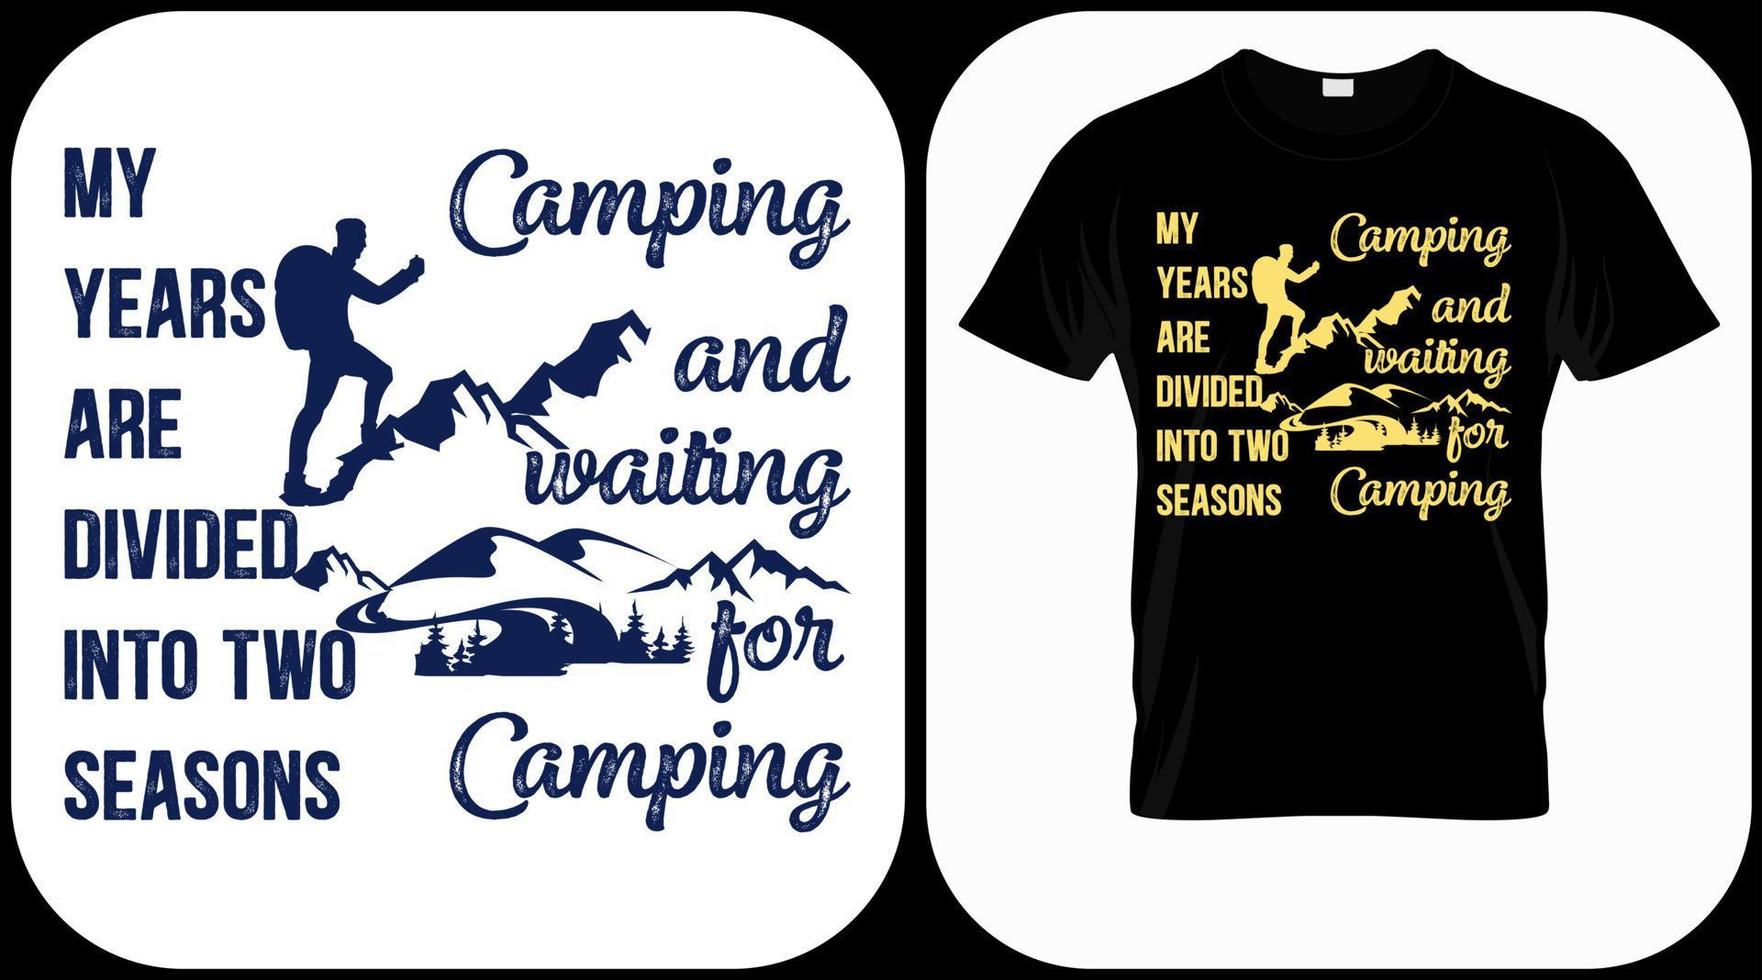 meus anos são divididos em duas estações - acampar e esperar por vetor de gráficos de acampamento, explorador vintage, aventura, deserto. símbolo de citações de aventura ao ar livre. perfeito para estampas de camisetas, pôster.